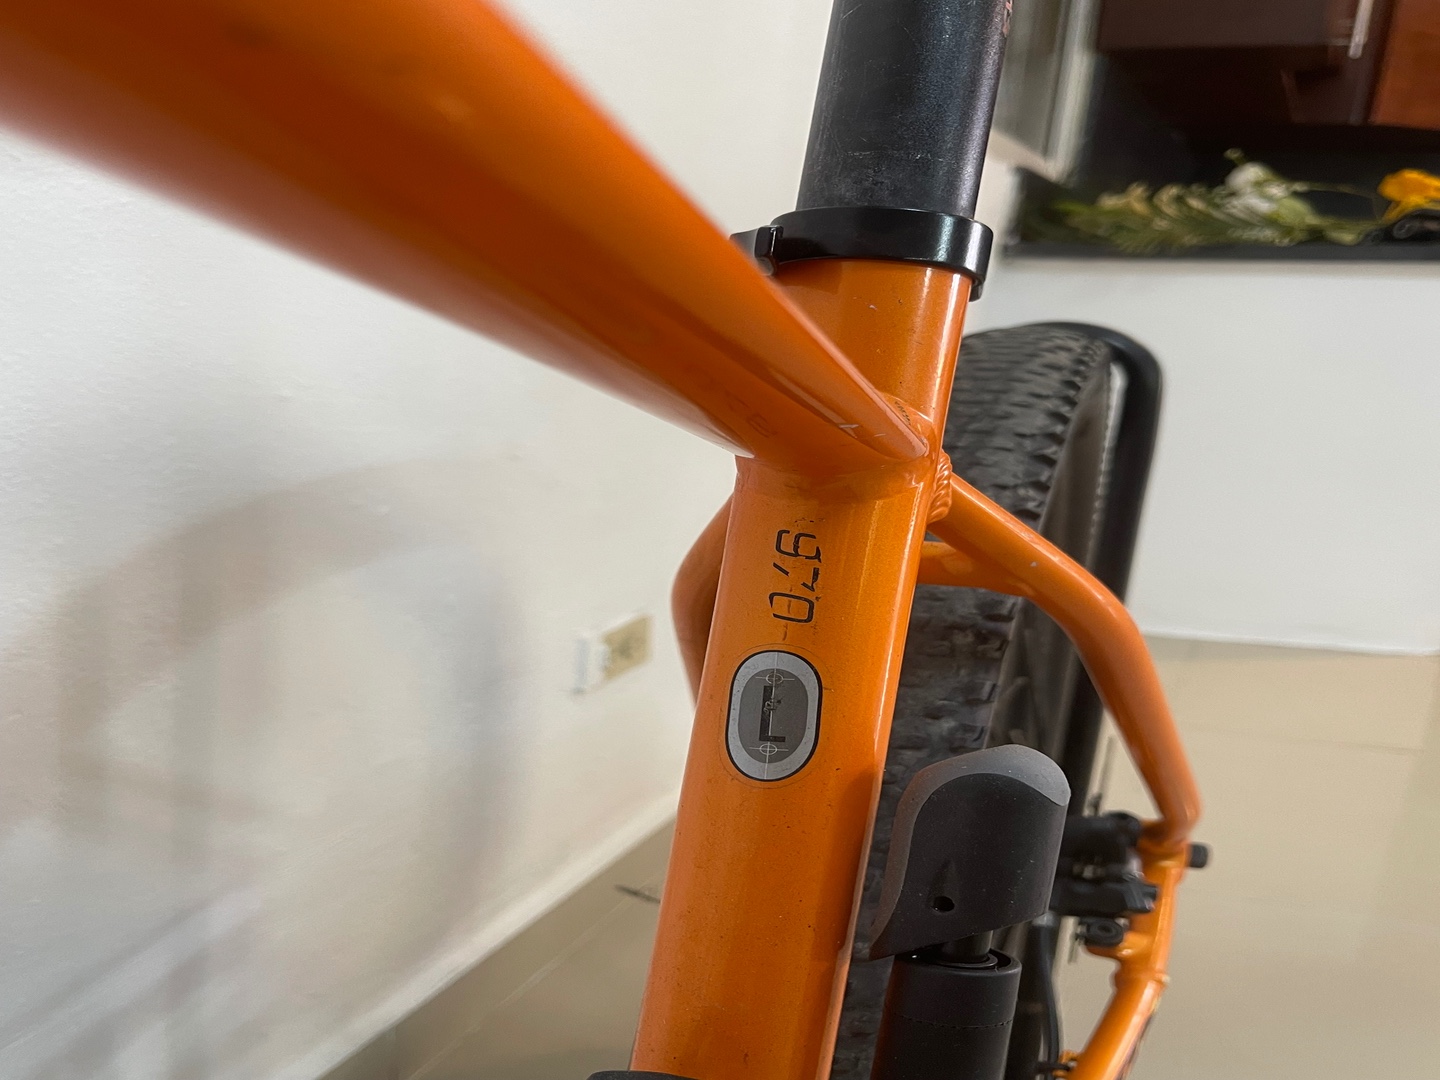 bicicletas y accesorios - Bicicleta Schott 970 color Naranja en Venta.  3